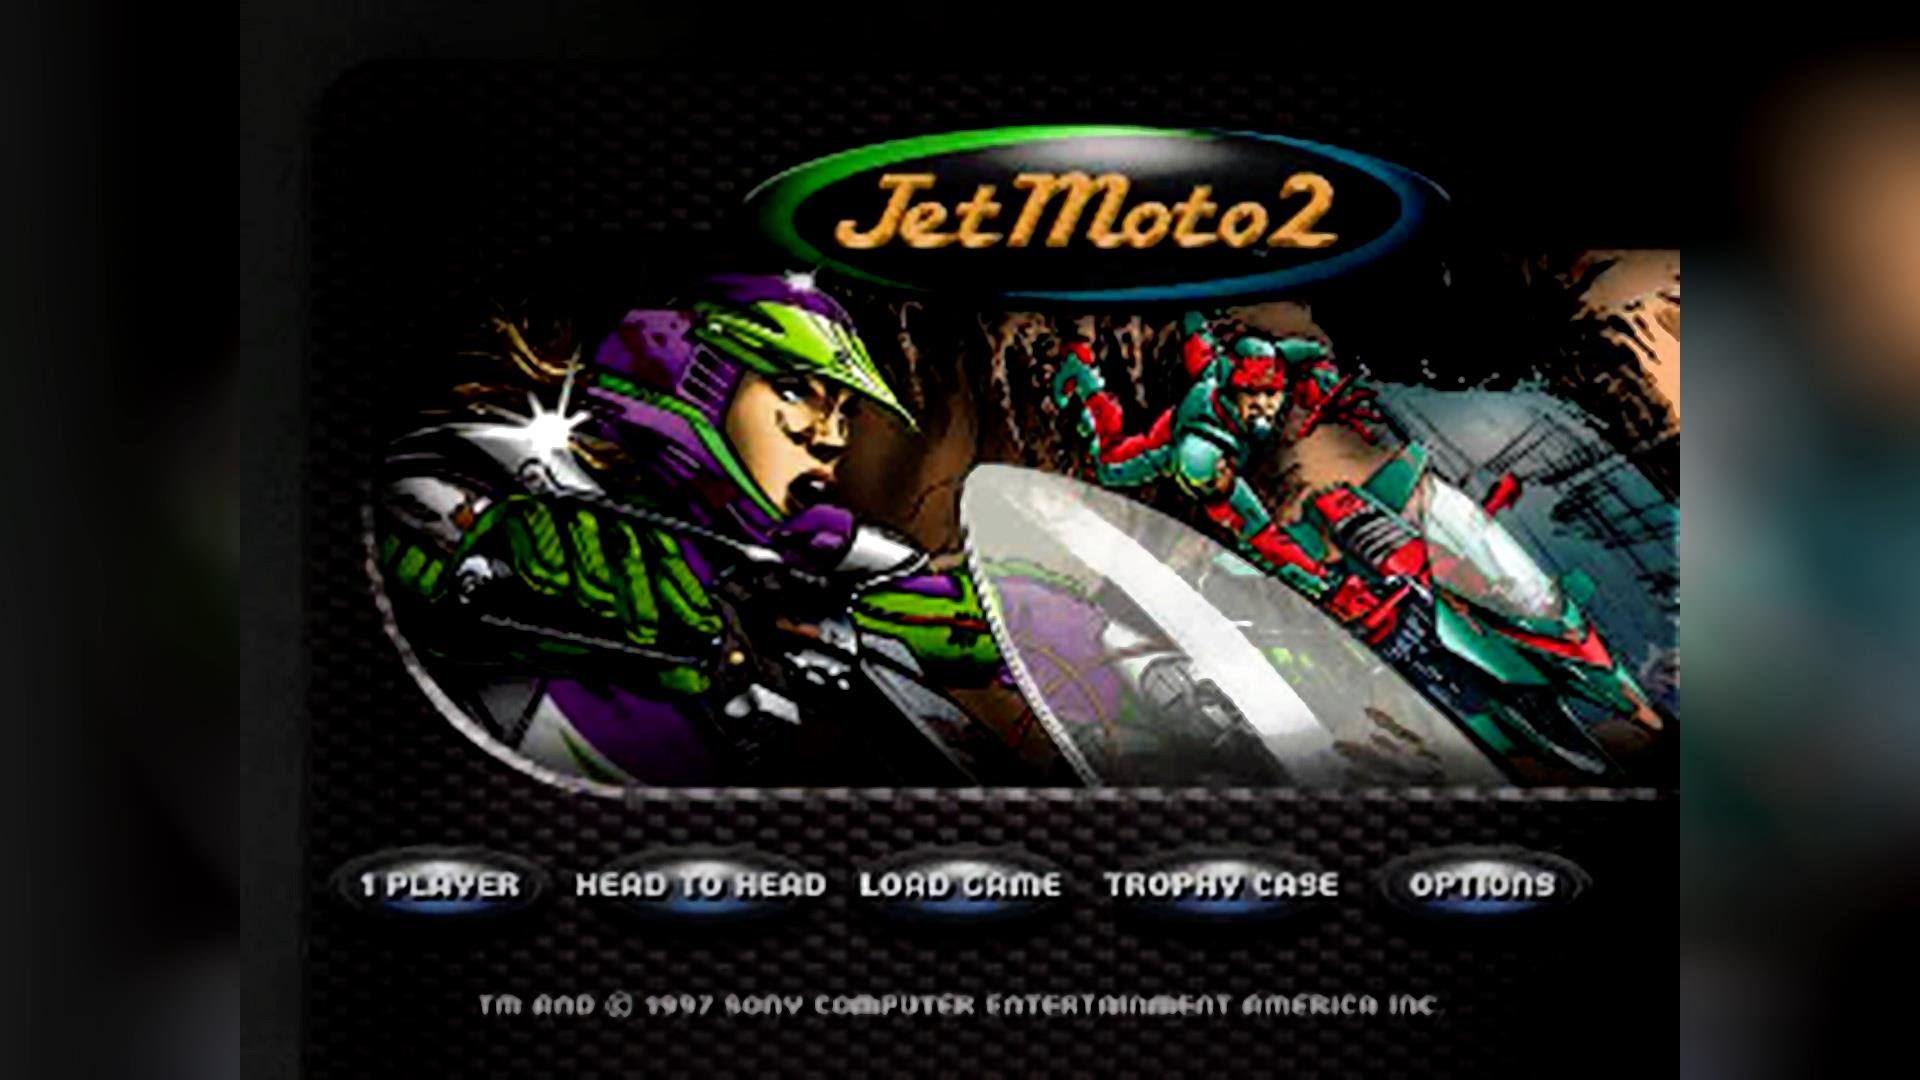 Jet Moto 2 Backgrounds, Compatible - PC, Mobile, Gadgets| 1920x1080 px